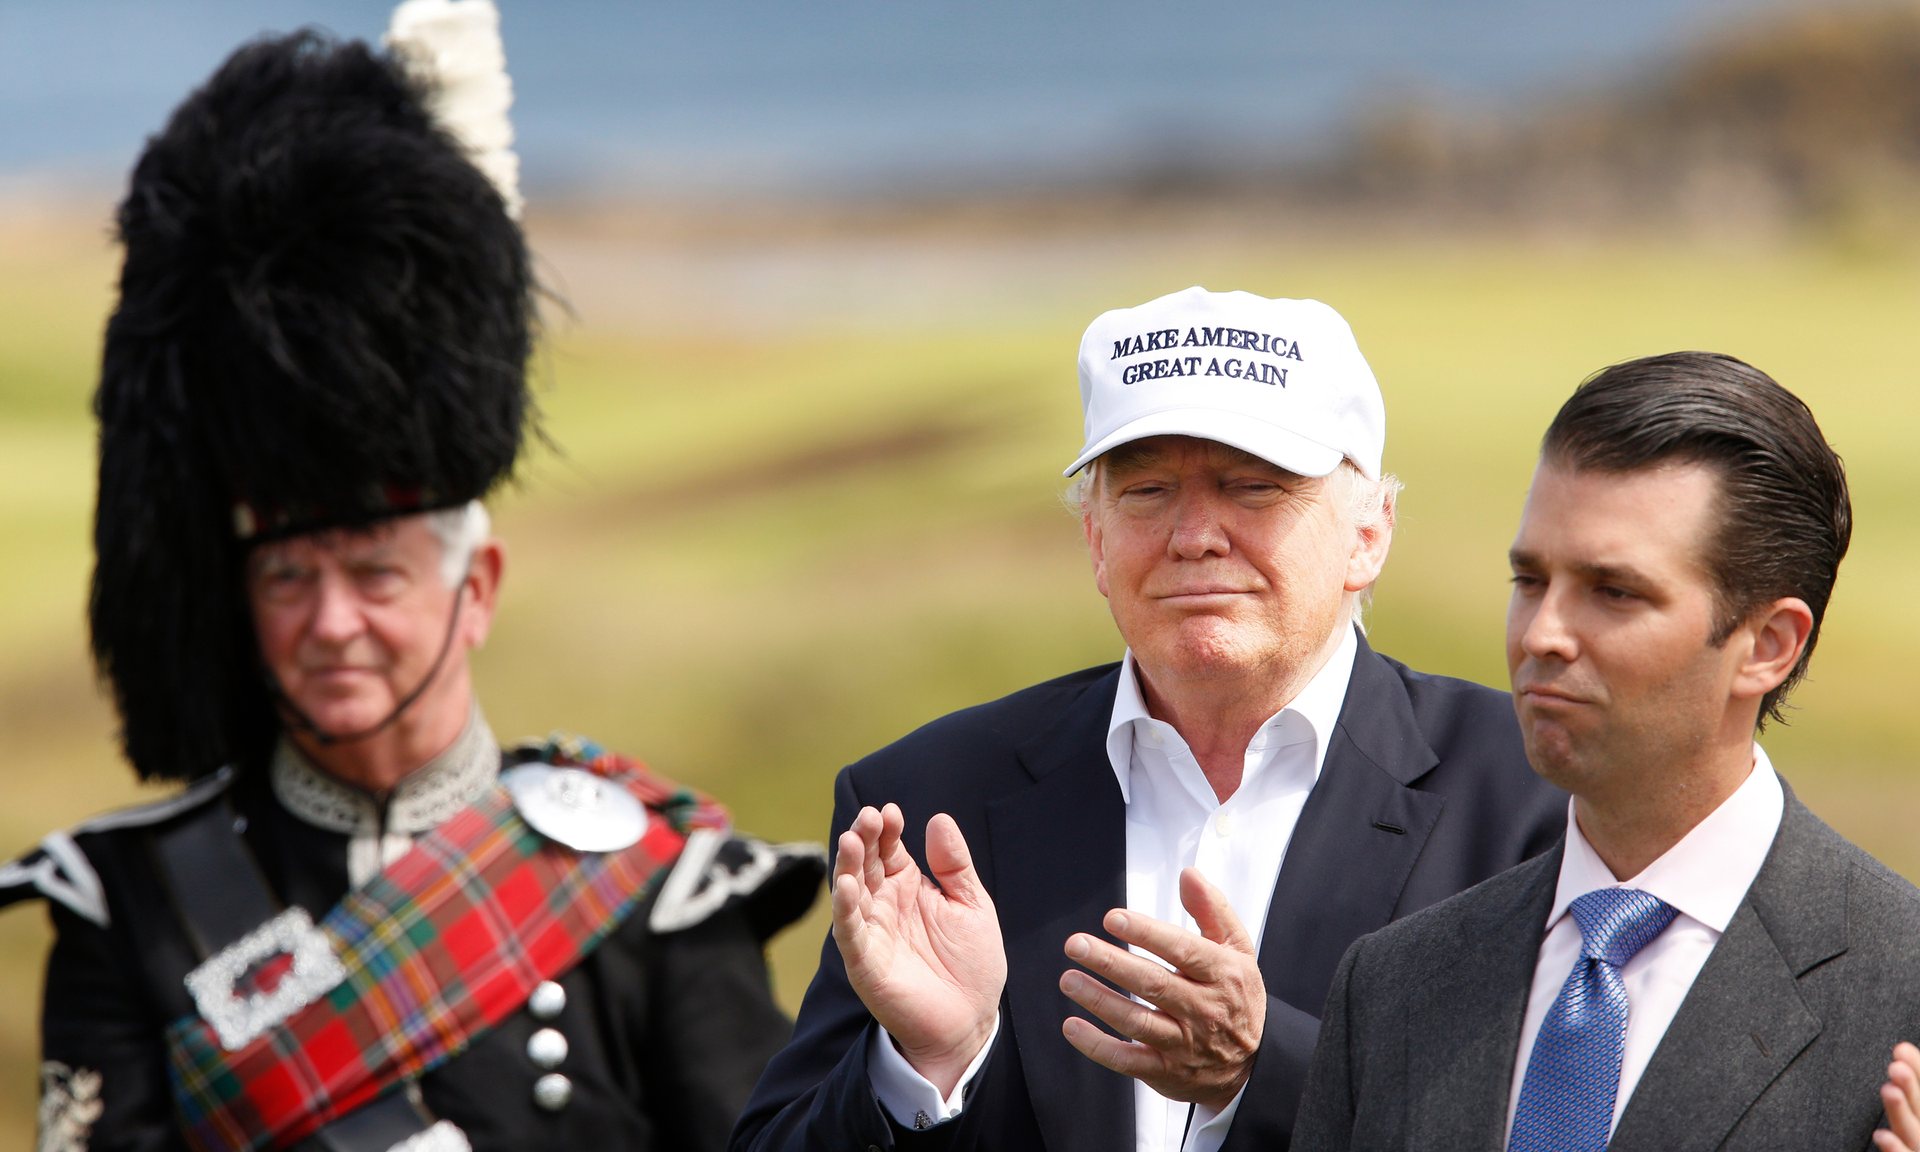 Ông Donald Trump cùng con trai Donald Jr. khai trương khách sạn và sân gôn ở Ayrshire, Scotland - ảnh: Guardian